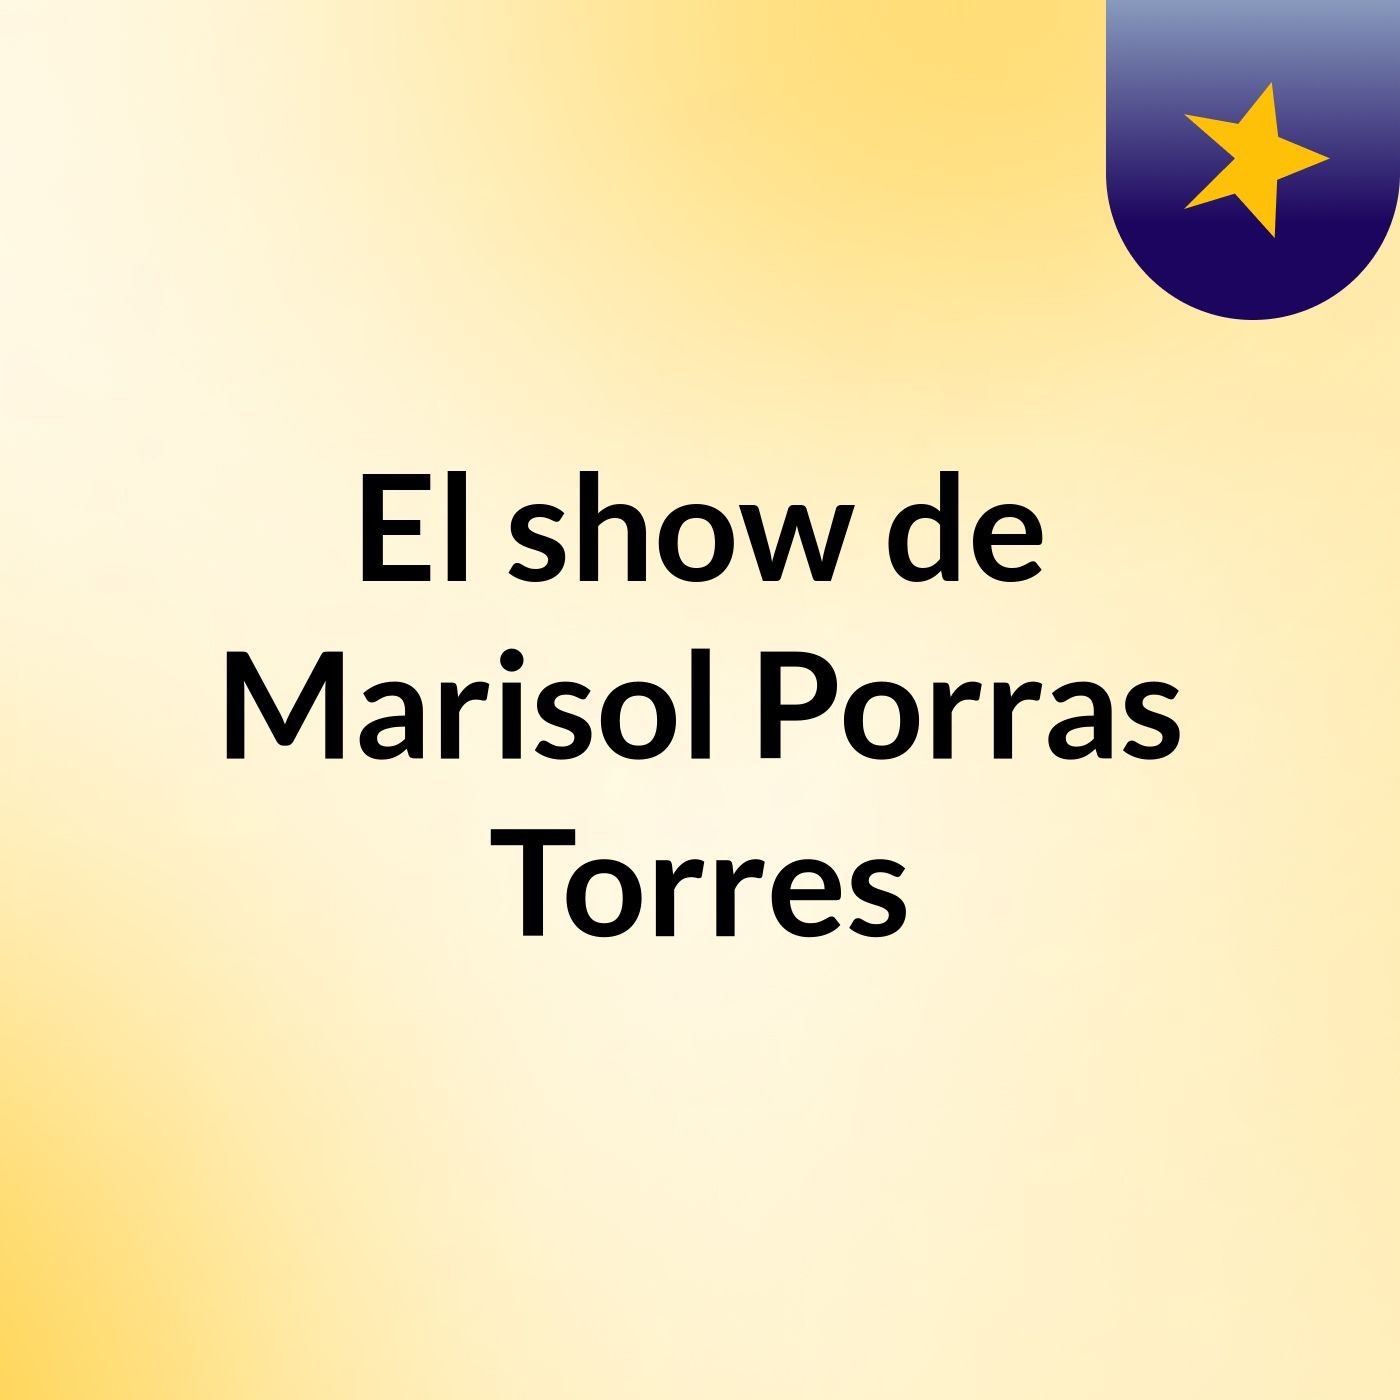 El show de Marisol Porras Torres